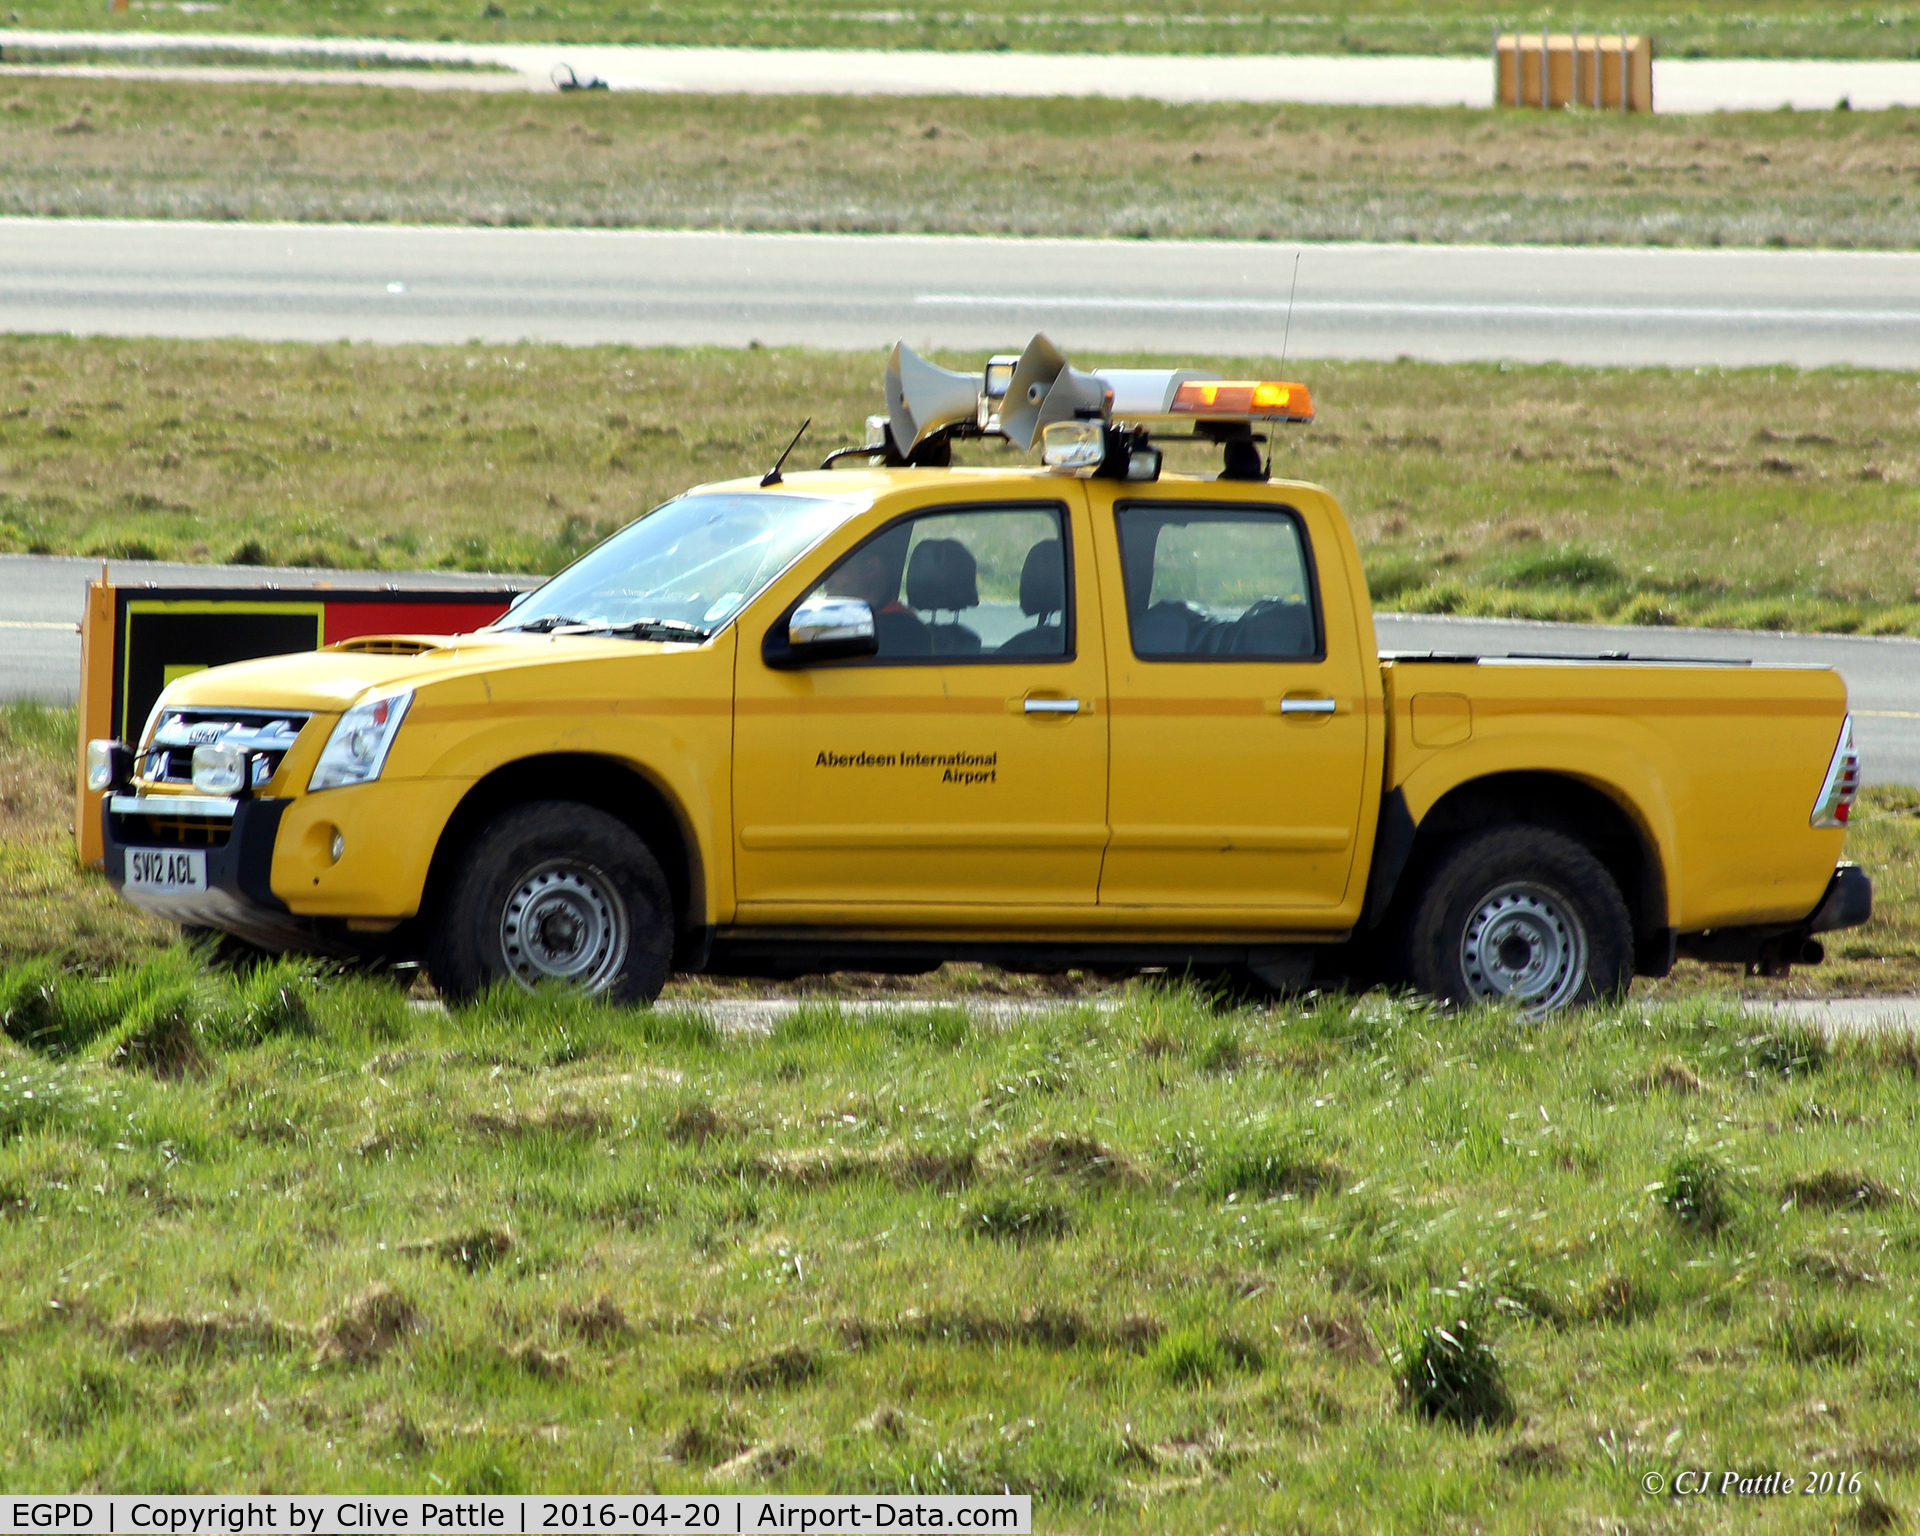 Aberdeen Airport, Aberdeen, Scotland United Kingdom (EGPD) - Airfield Ops vehicle at Aberdeen EGPD